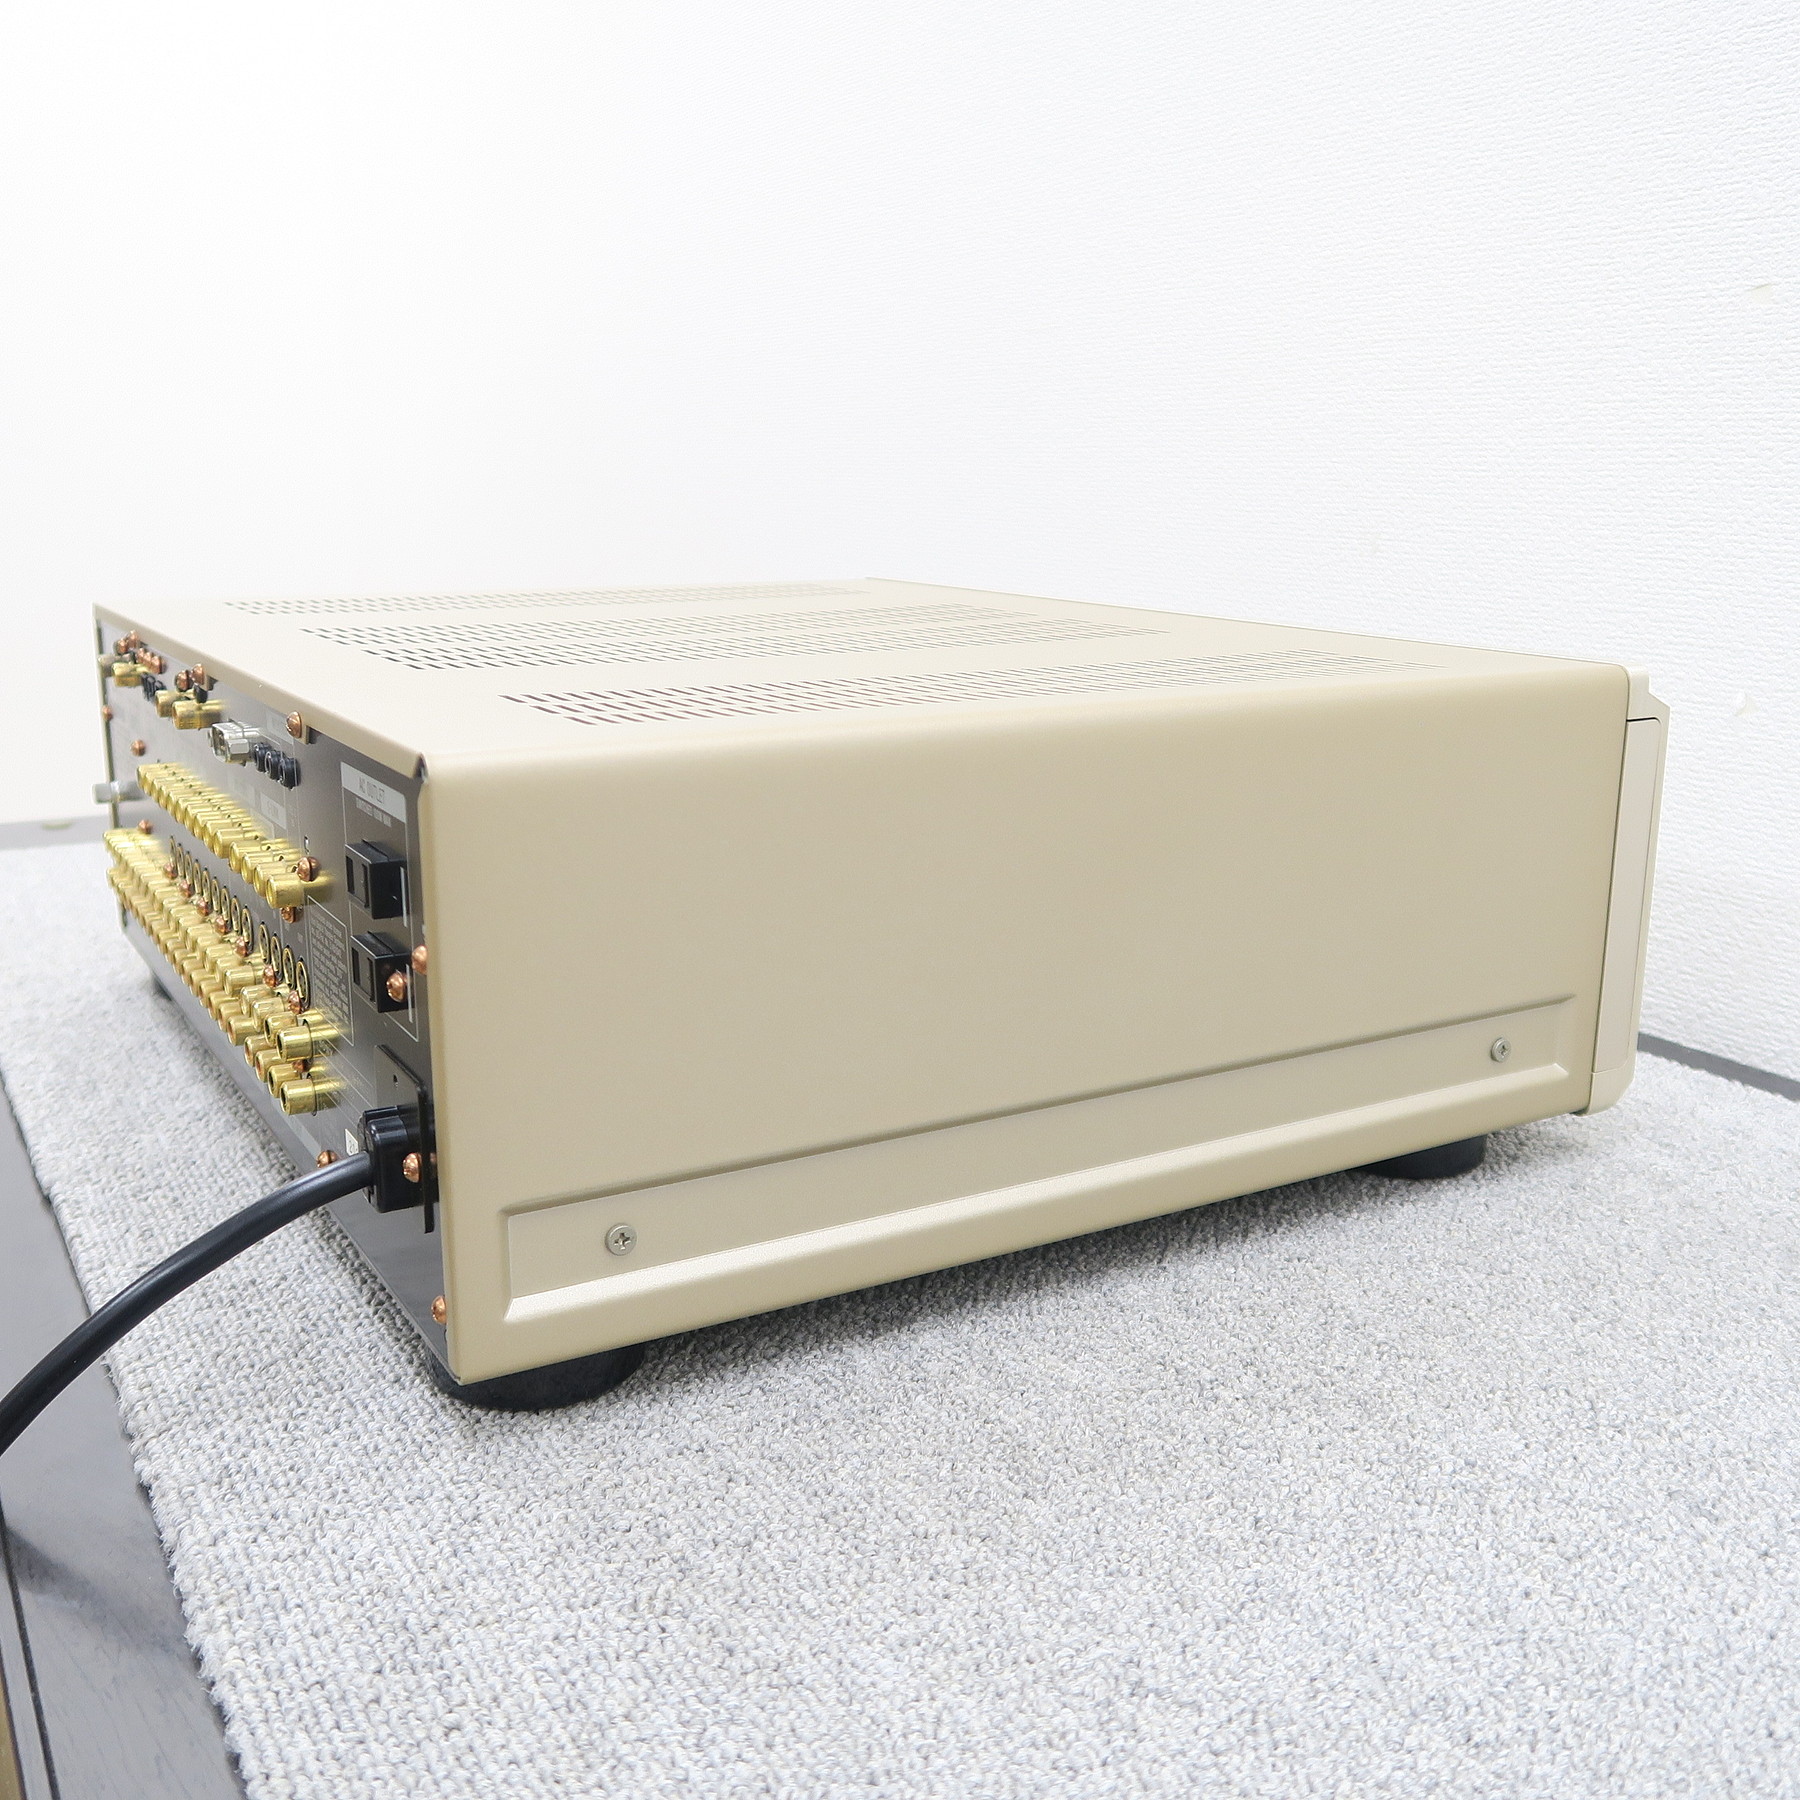 【美品】TA-E9000ES AVコントロールアンプ ゴールド 動作確認済すぐご配送致します